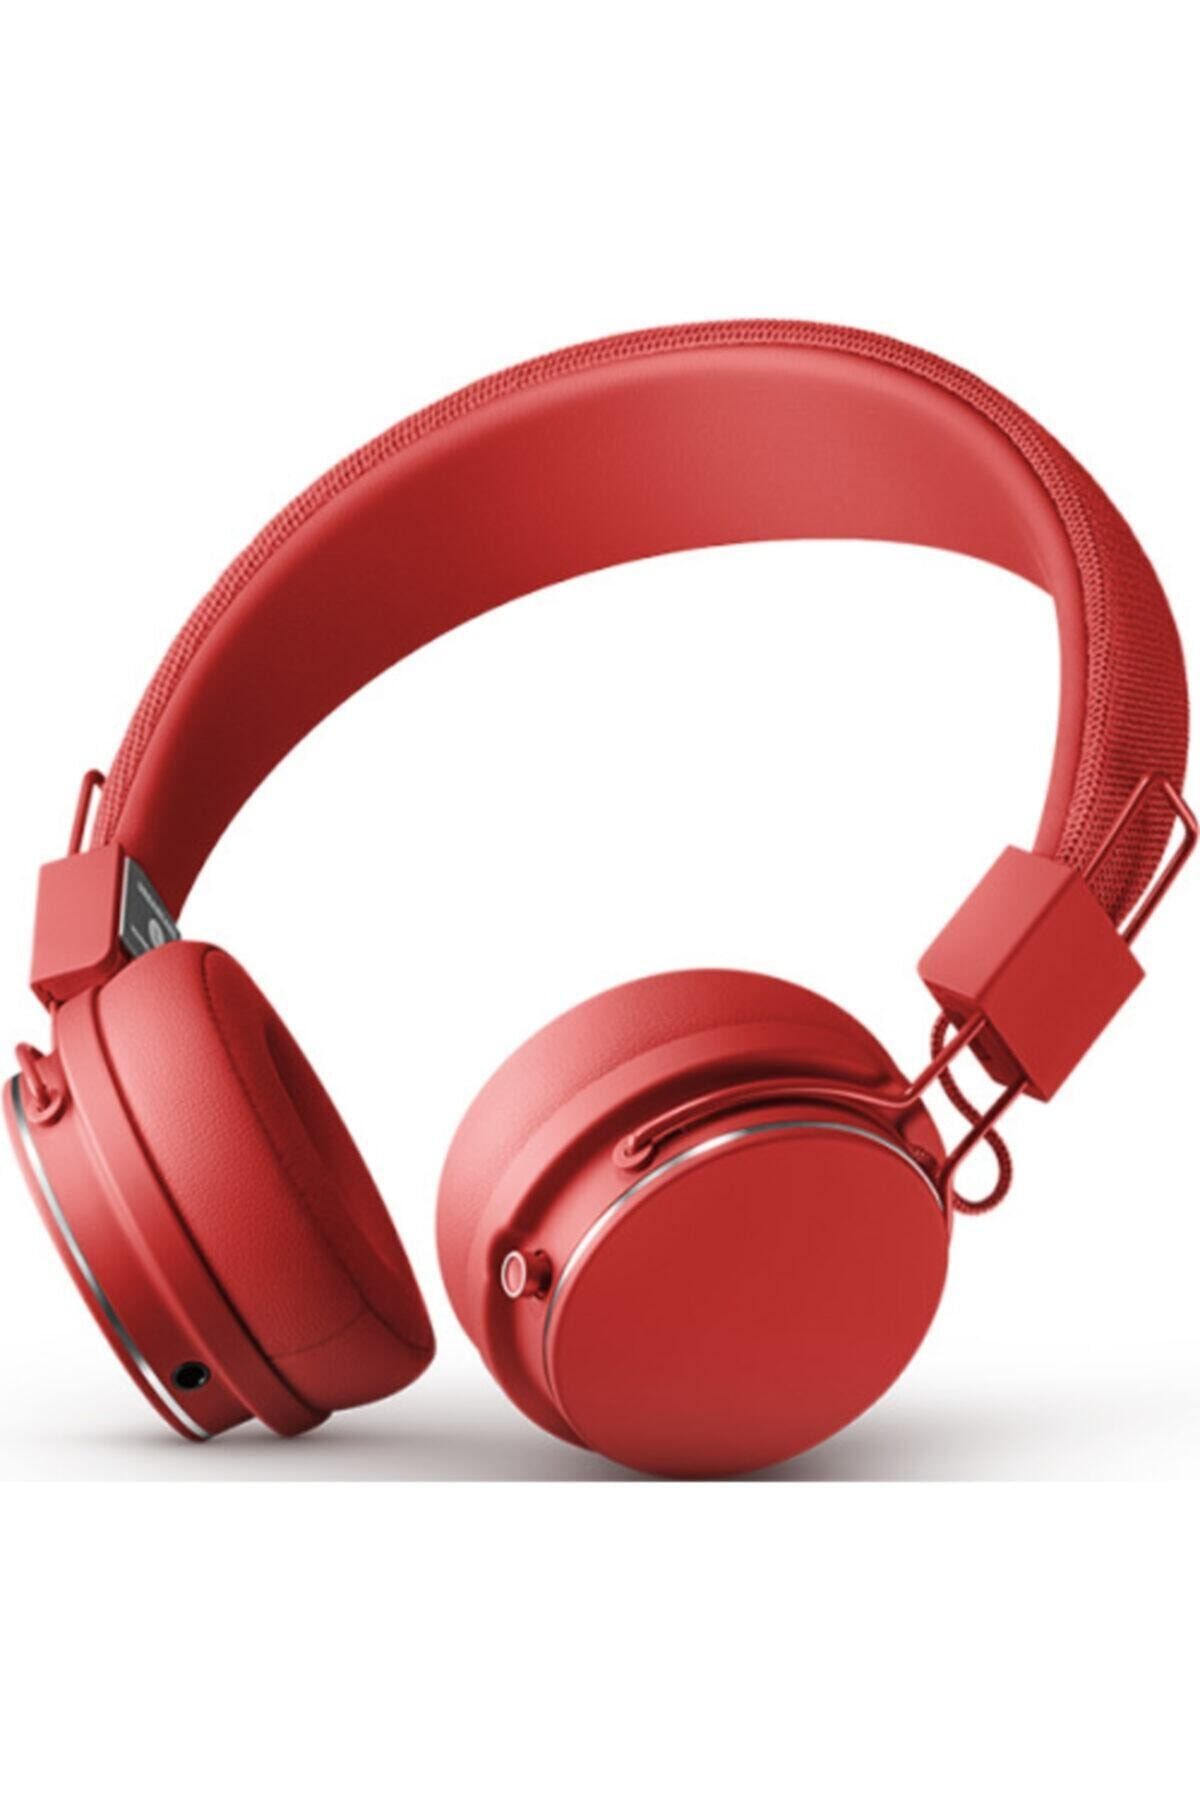 Urbanears Plattan Iı Bt Kulak Üstü Kırmızı Bluetooth Kulaklık (Urbanears Türkiye Garantili)